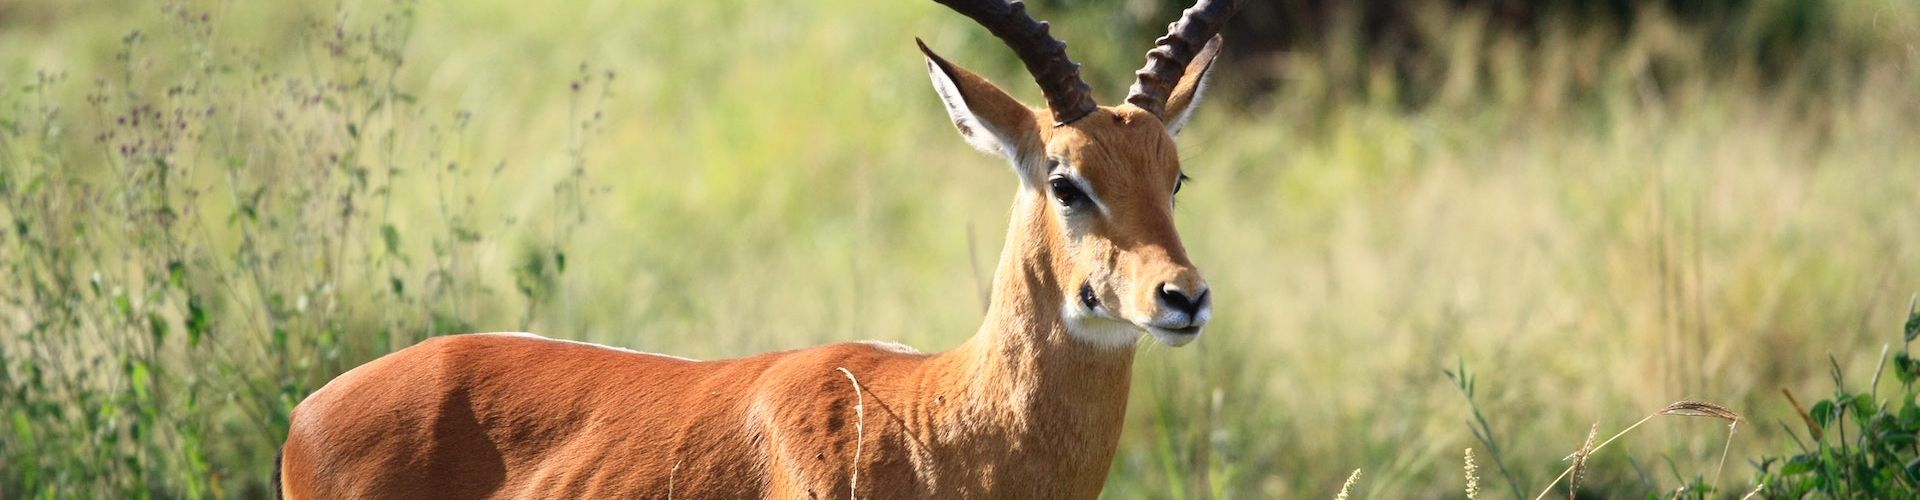 Es gibt viele Antilopenarten, die man auf einer Safari in Tansania sehen kann